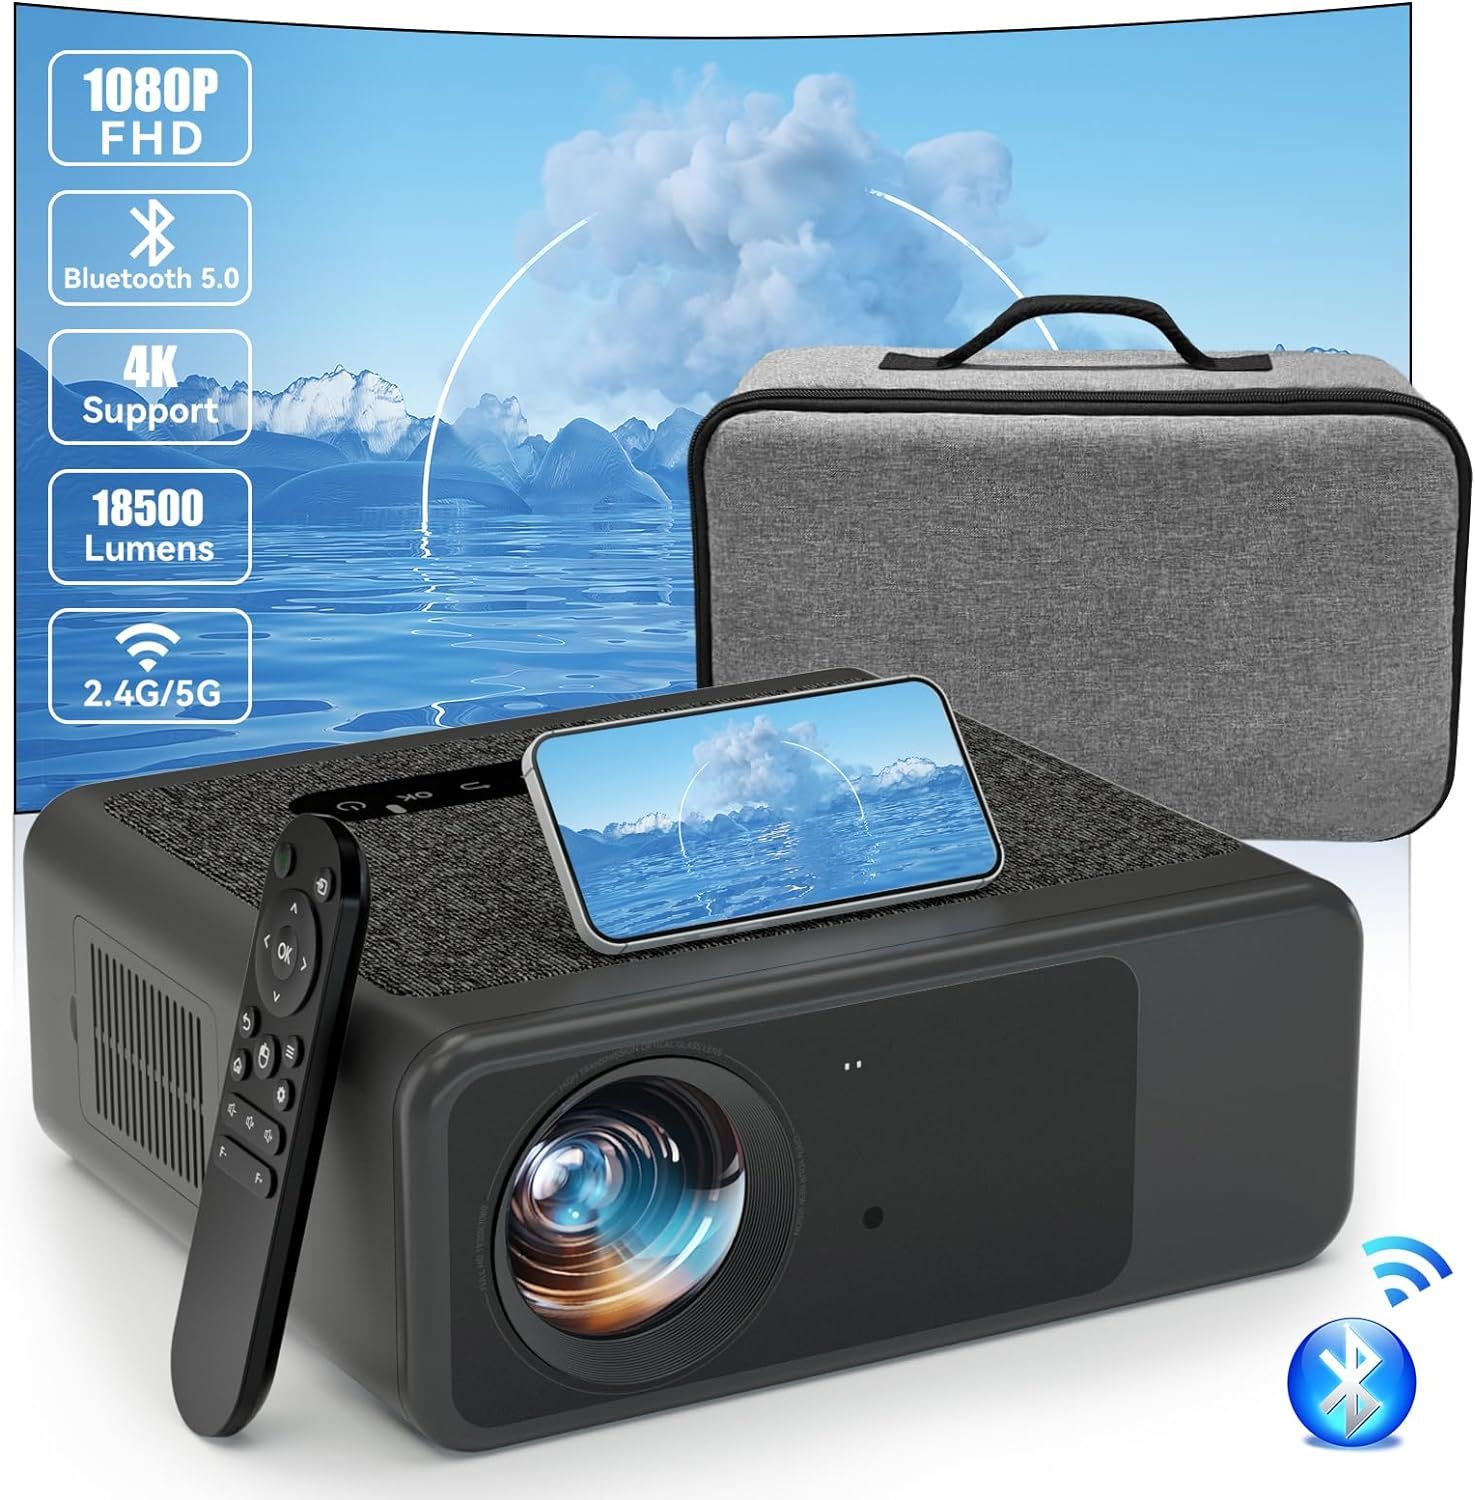 Vidéoprojecteur 5G WiFi Bluetooth, Keystone, Projecteur 4K Portable, Full HD 1080P, 18500 L, Rétroprojecteur Home Cinéma 300", Compatible avec TV Stick, iOS, Android, Switch